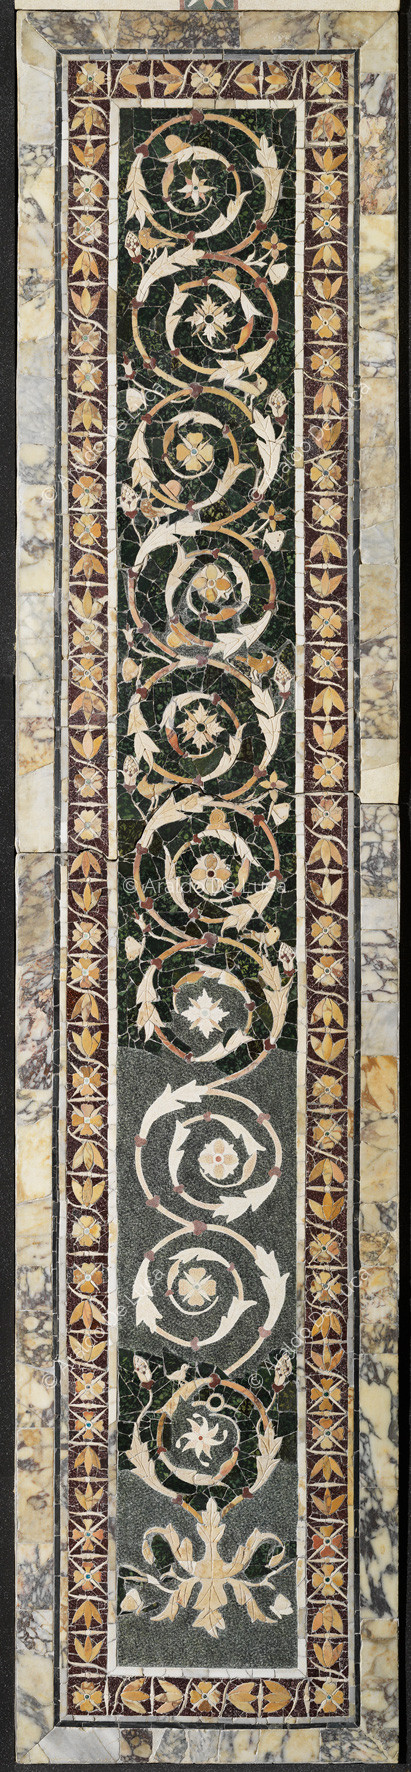 Lesena con tralcio floreale e bordo a fiori di loto - Opus Sectile di Porta Marina, particolare